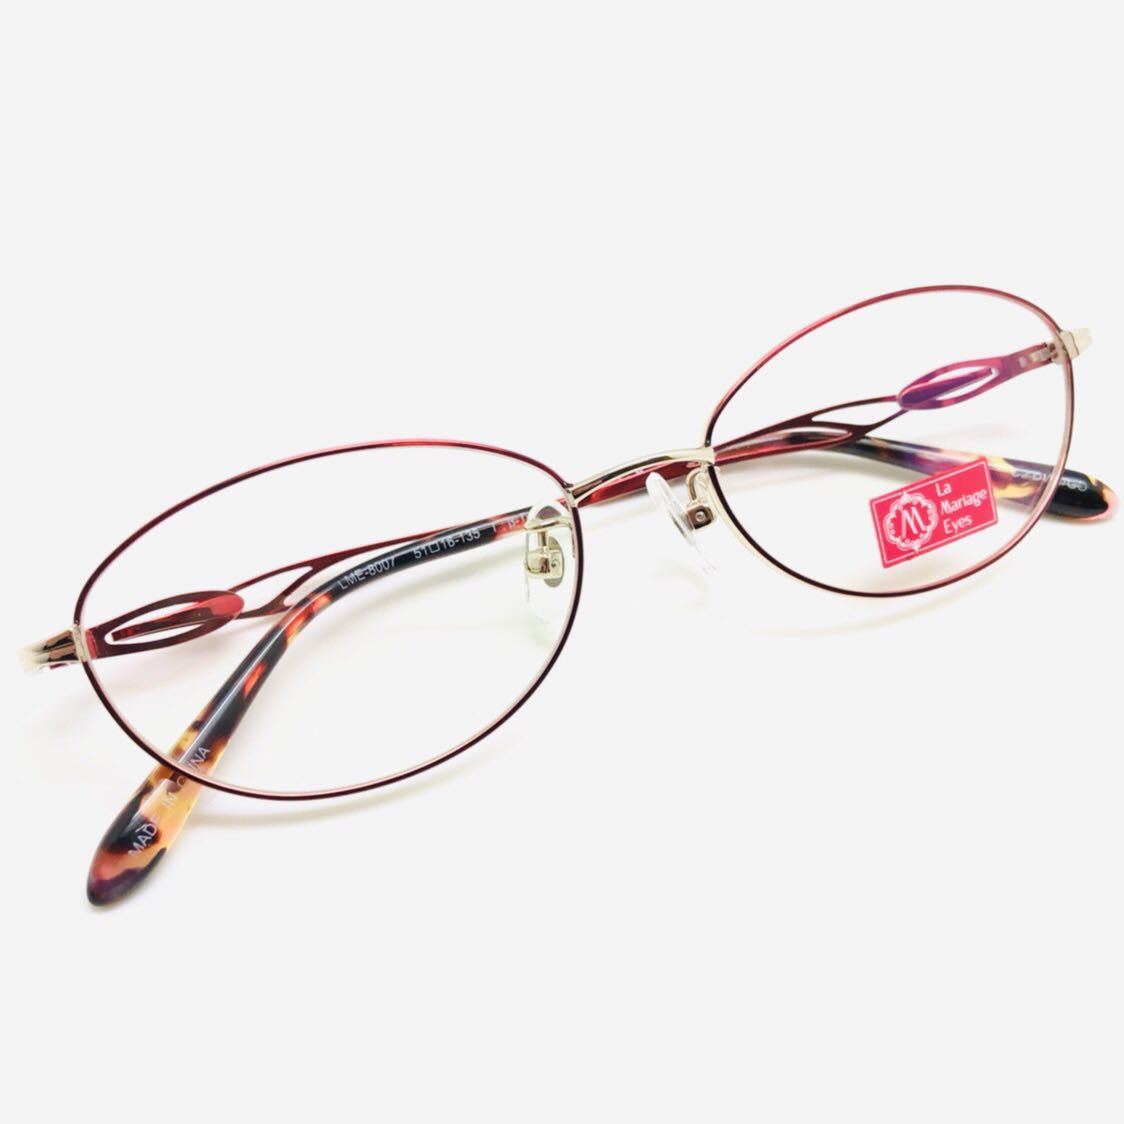 新品 La Mariage Eeys 眼鏡 メガネ 綺麗 上品 オシャレ かわいい 赤色系 レッド系_画像2